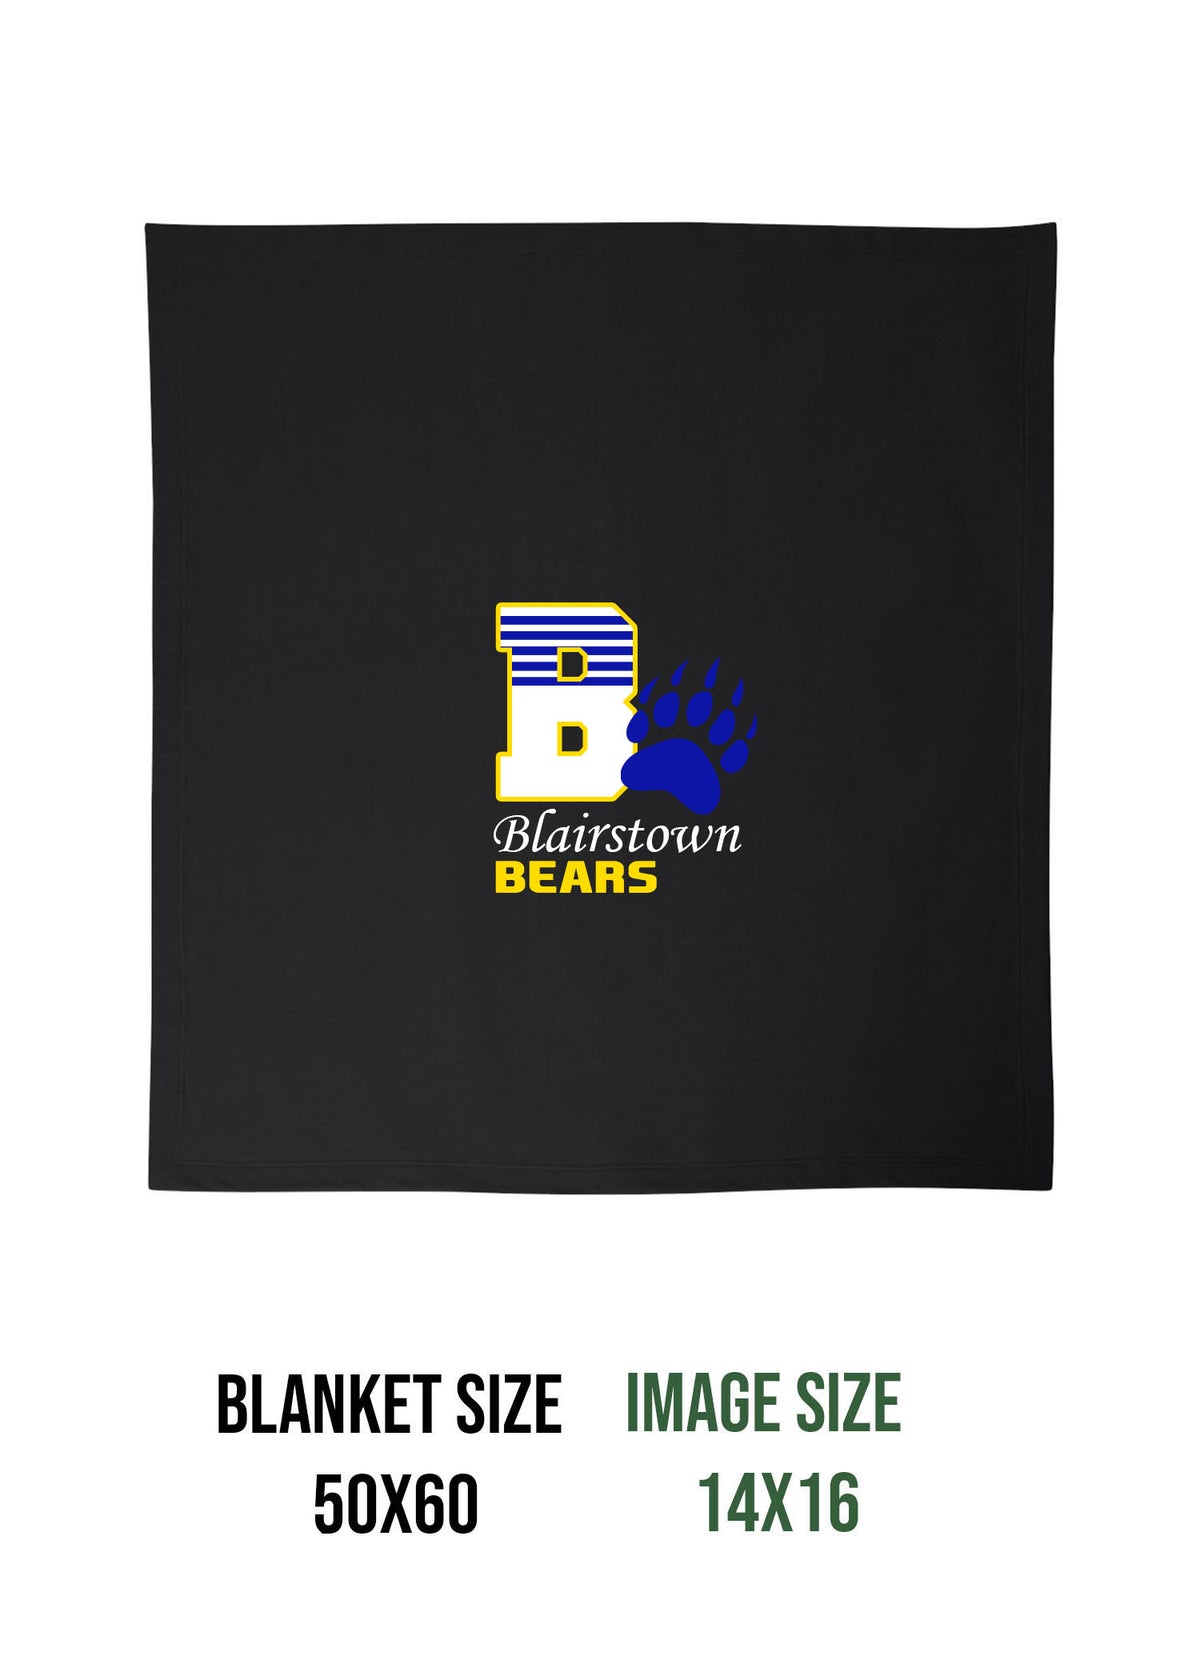 Bears Design 8 Blanket